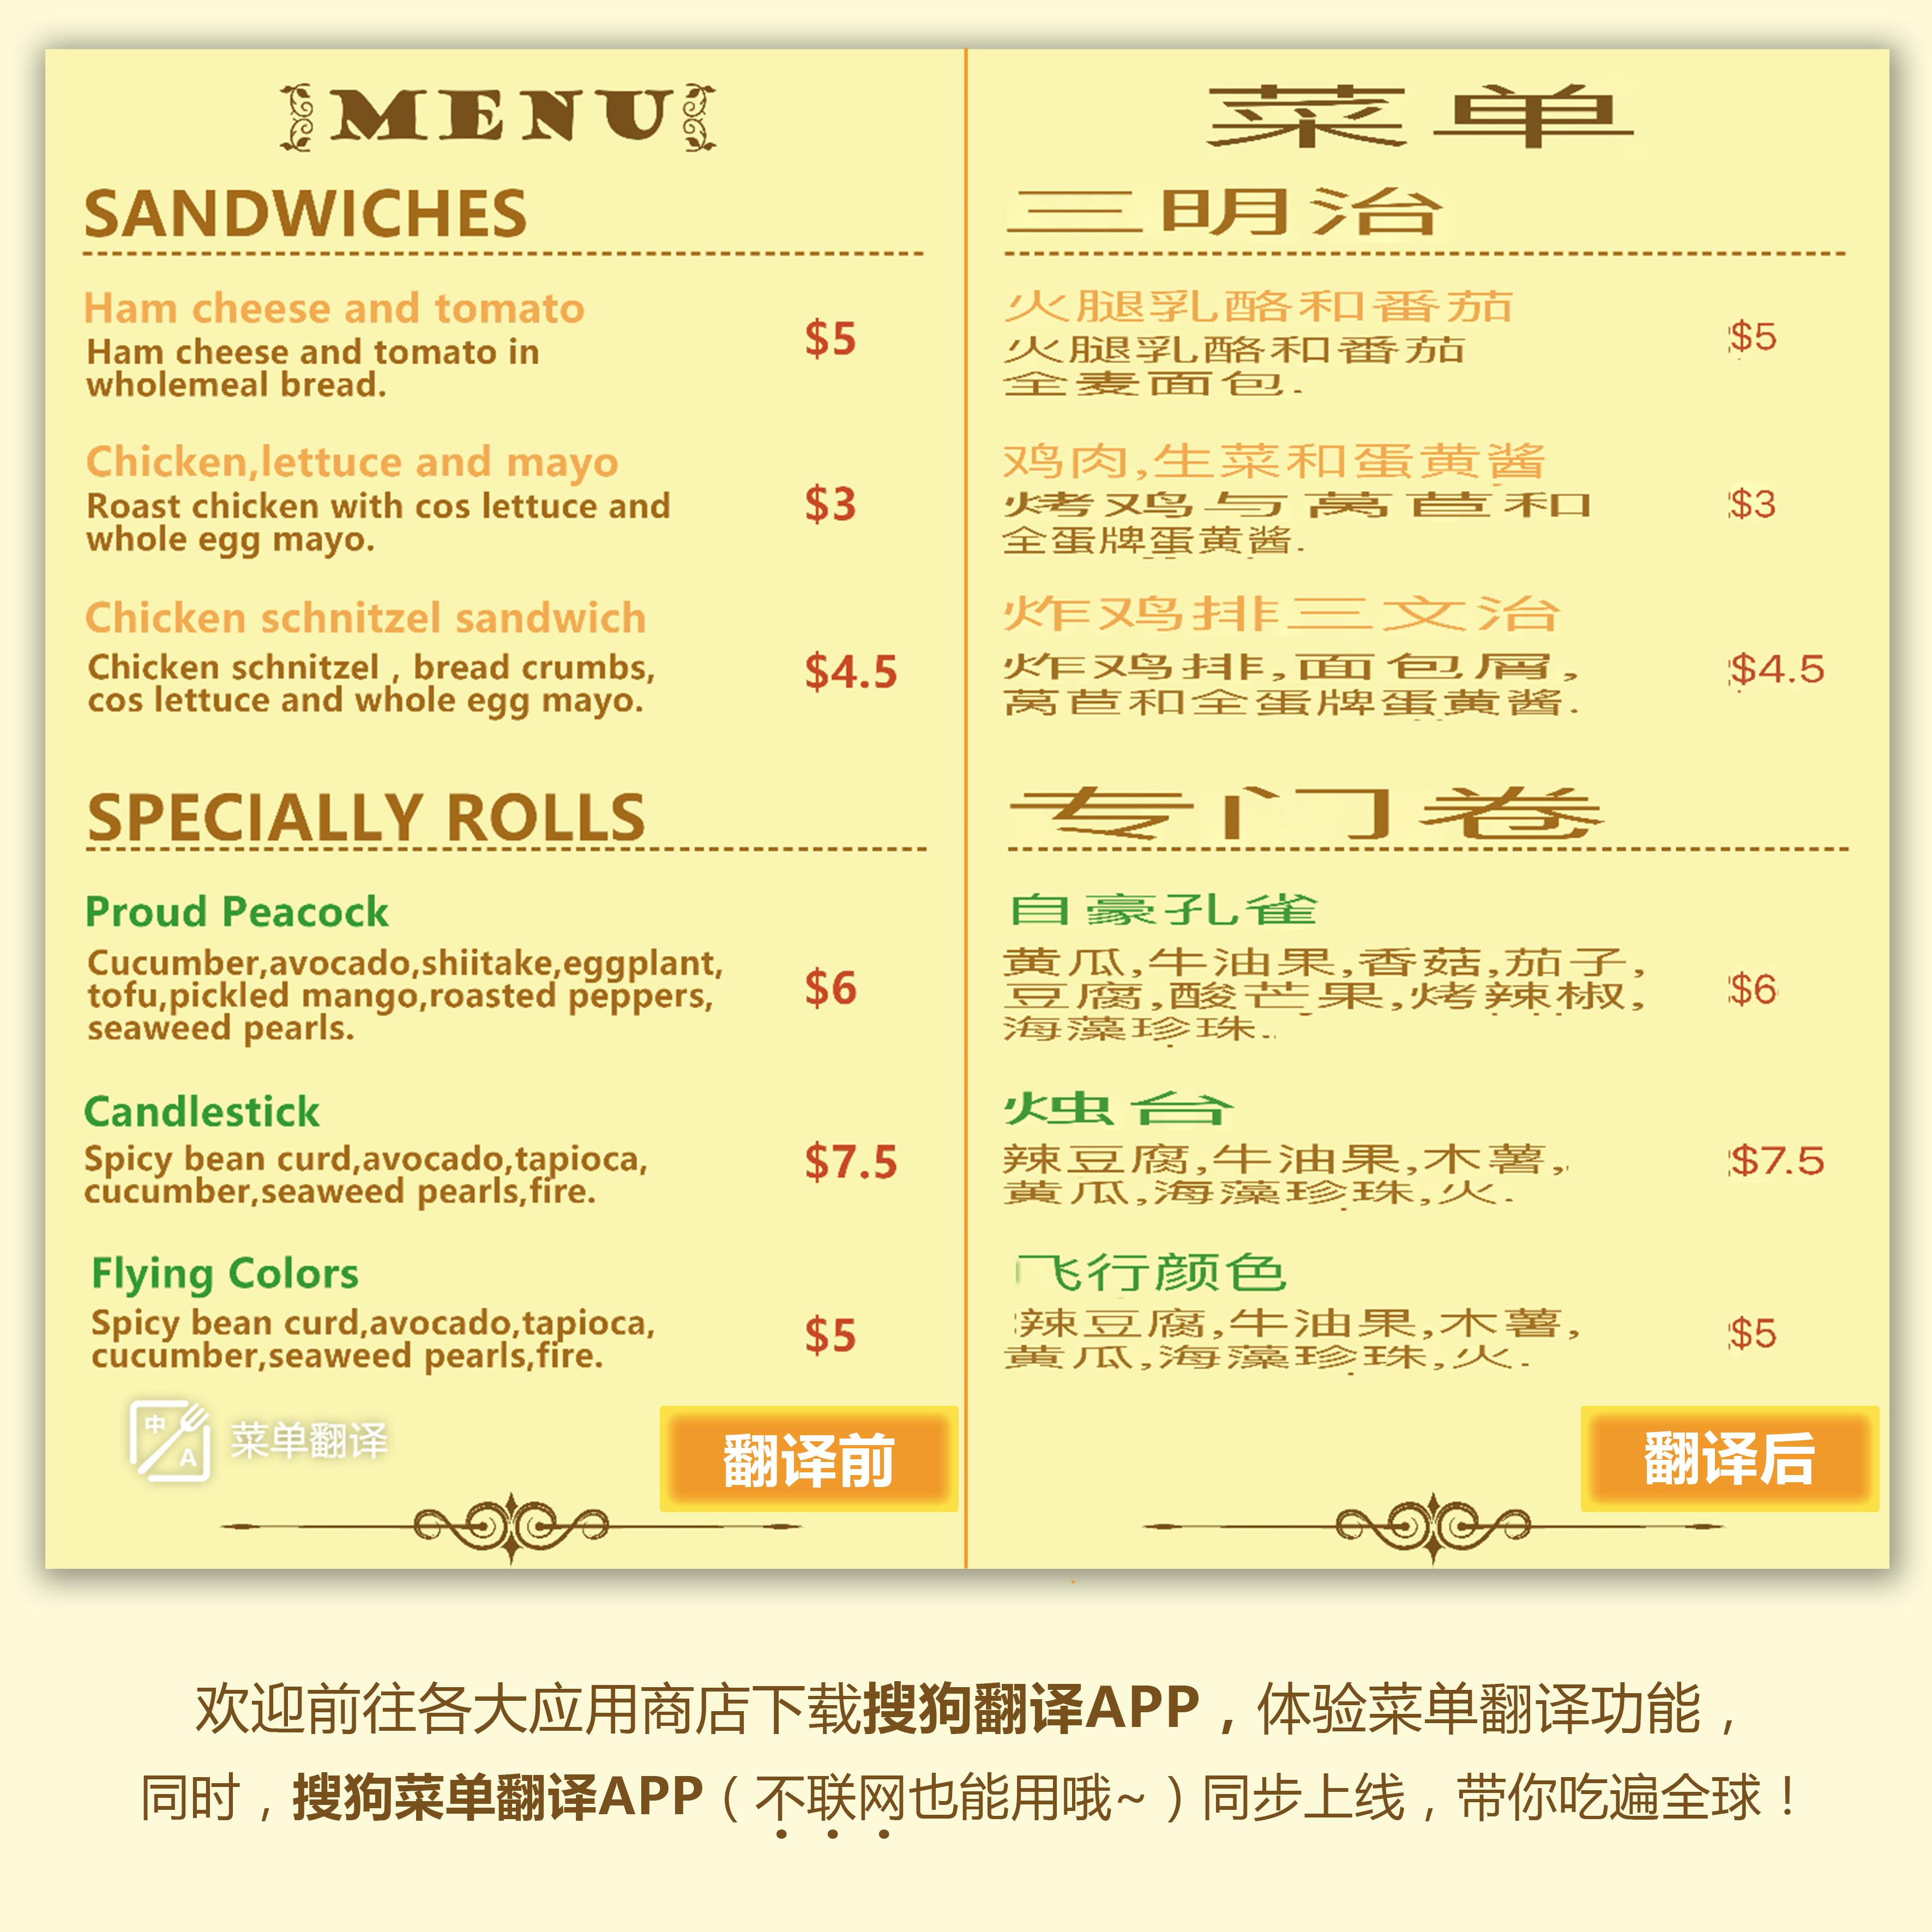 为什么很多餐厅的菜单在翻译英文时会使用